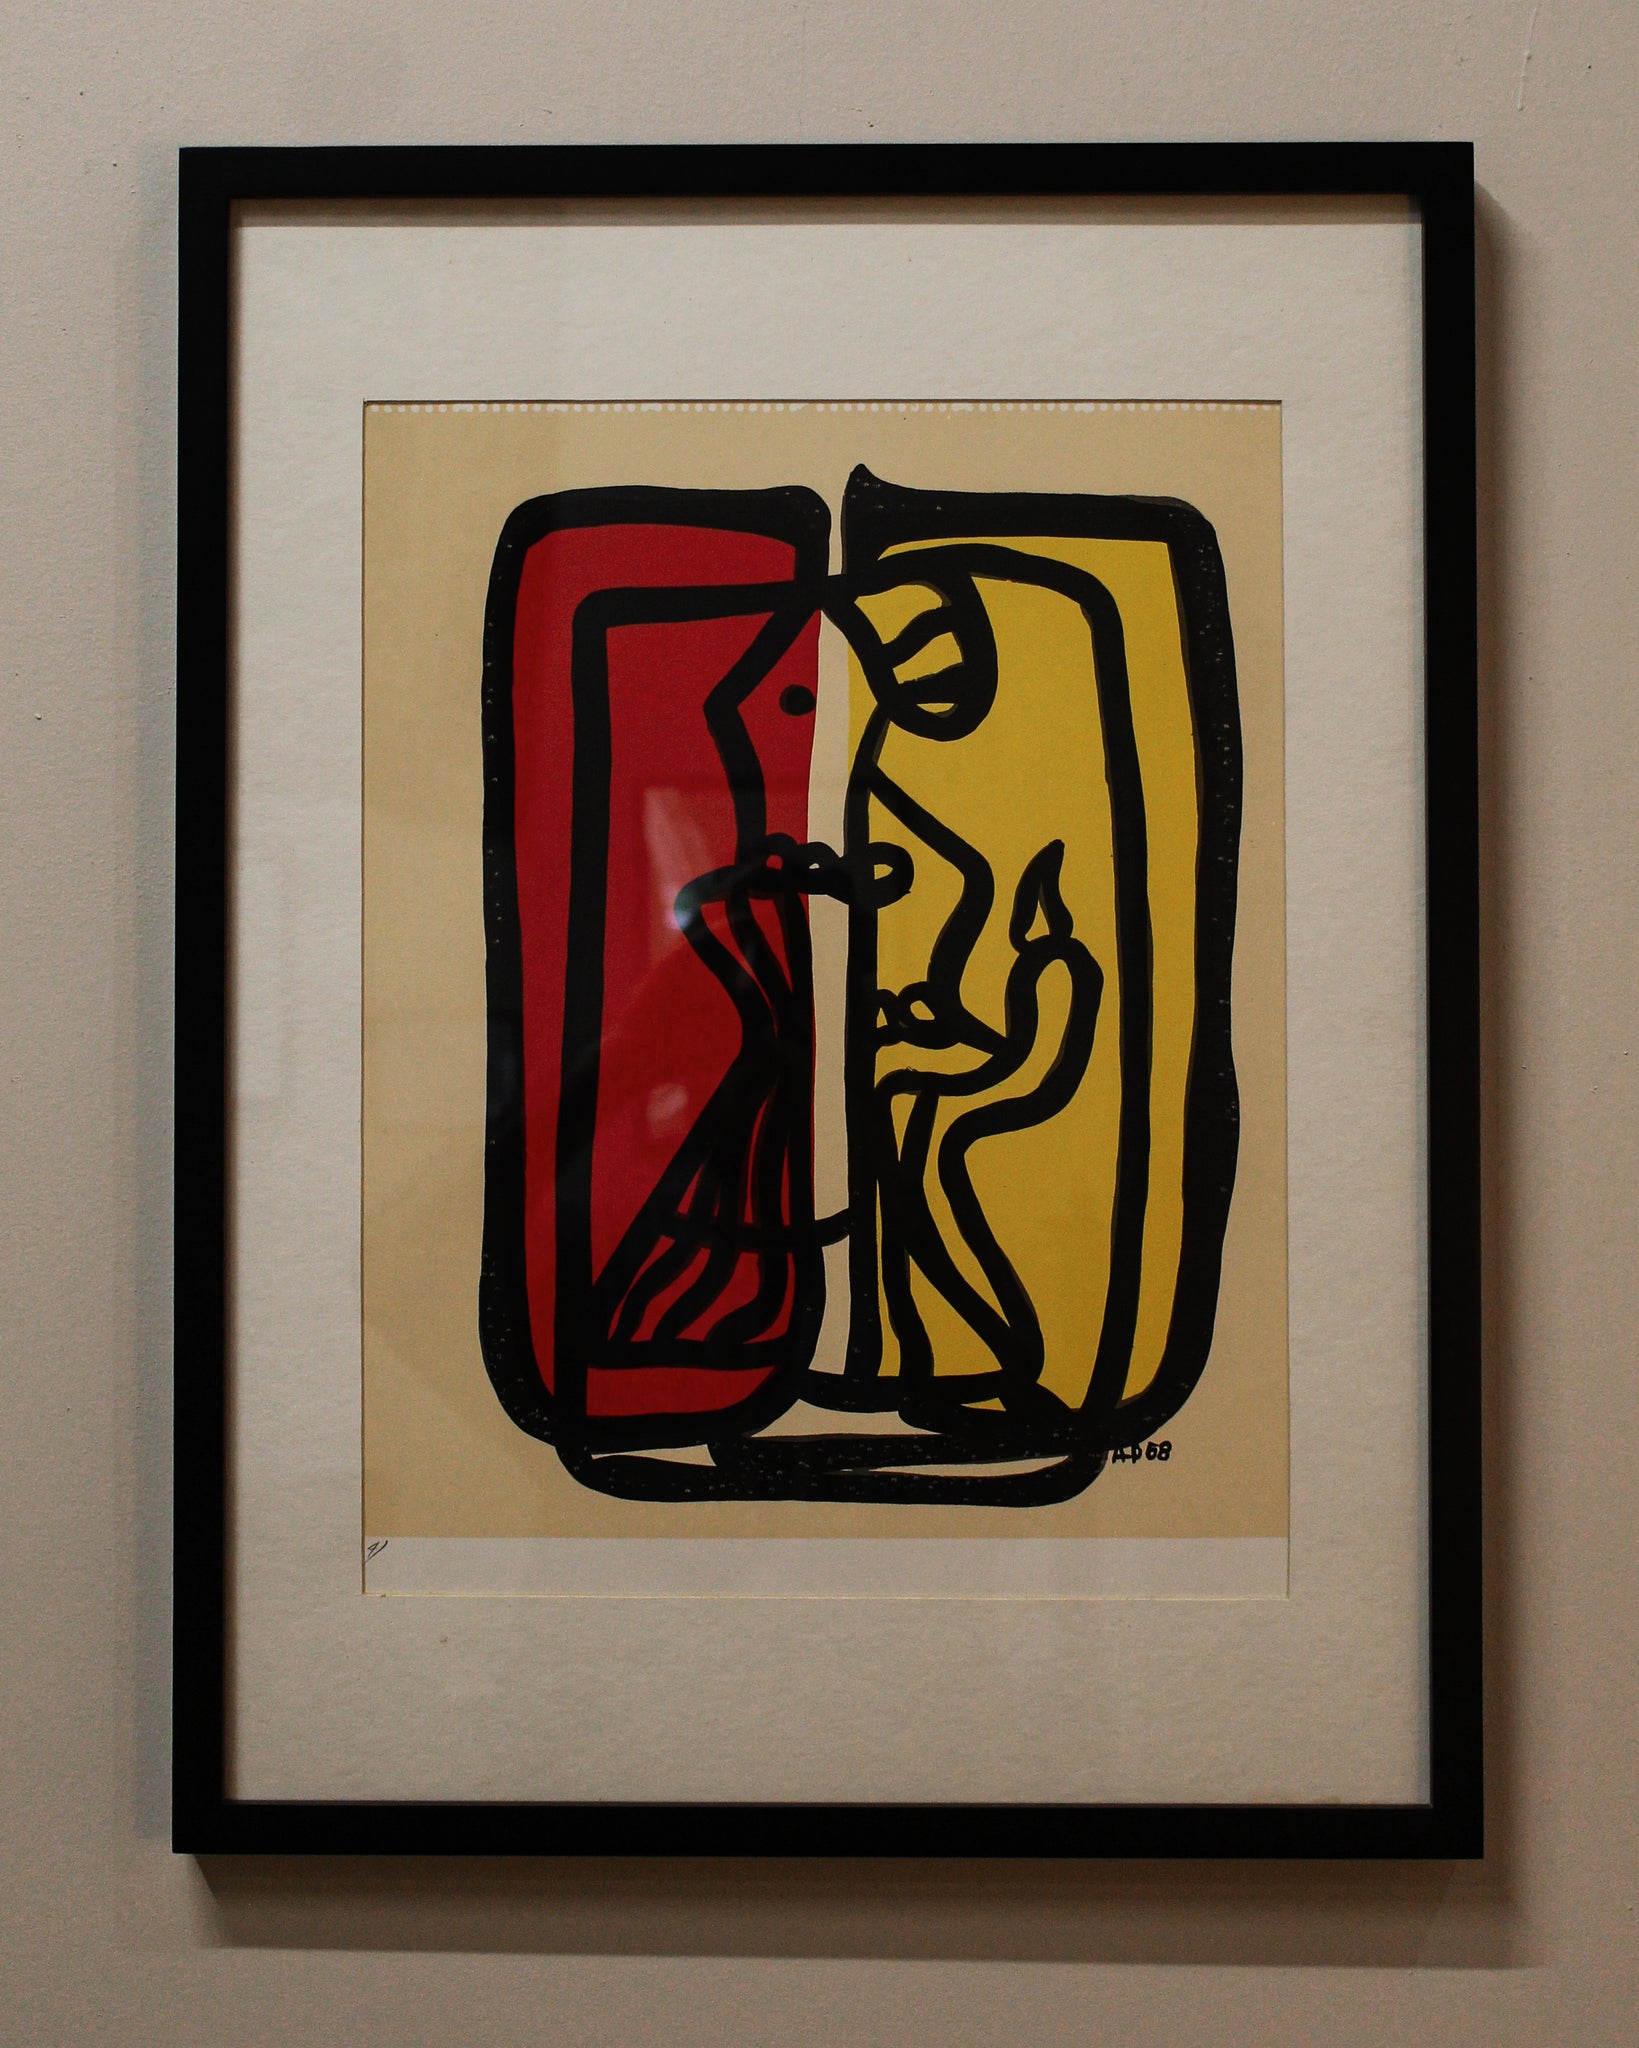 “Untitled”, 1958 - Amelia Peláez, Gouache on Paper